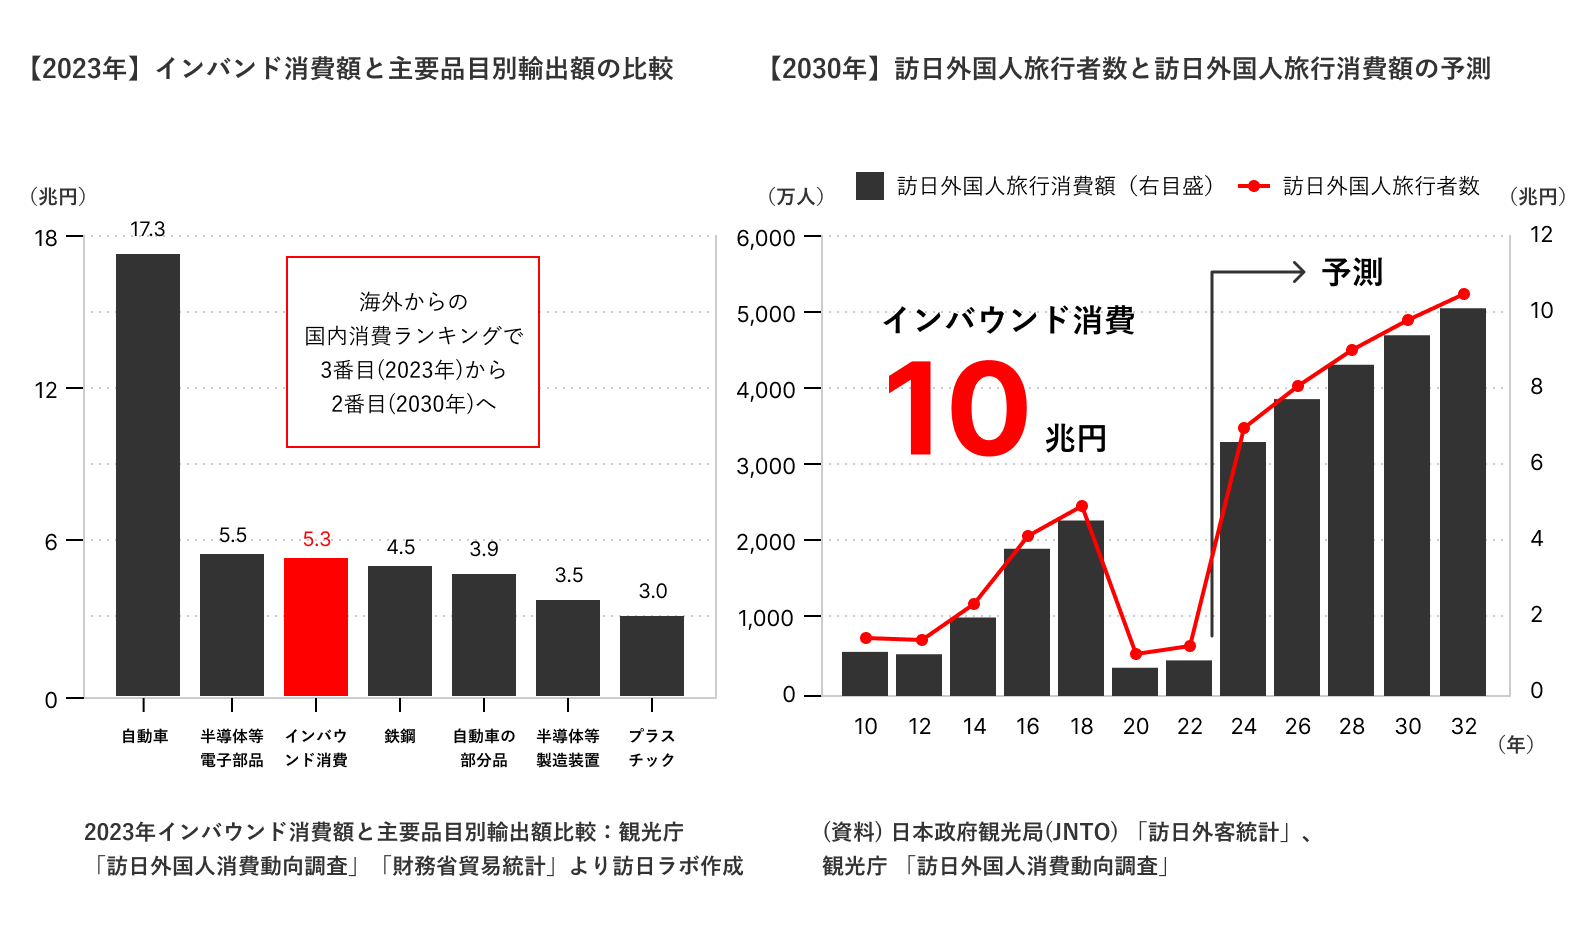 【2023年】インバンド消費額-訪日外国人旅行者数-